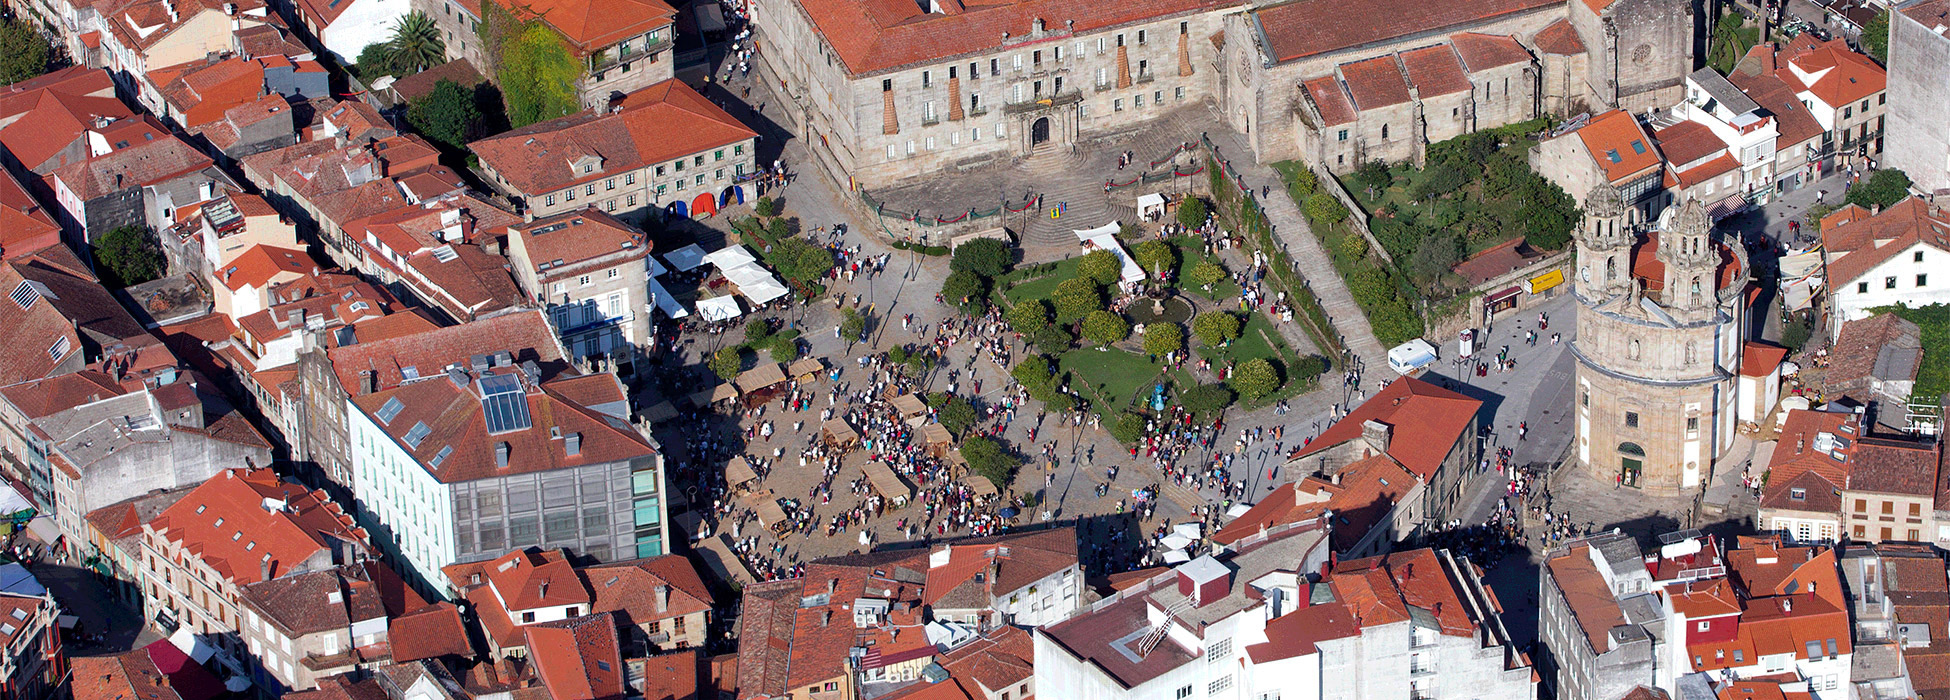 Fiestas en Rías Baixas